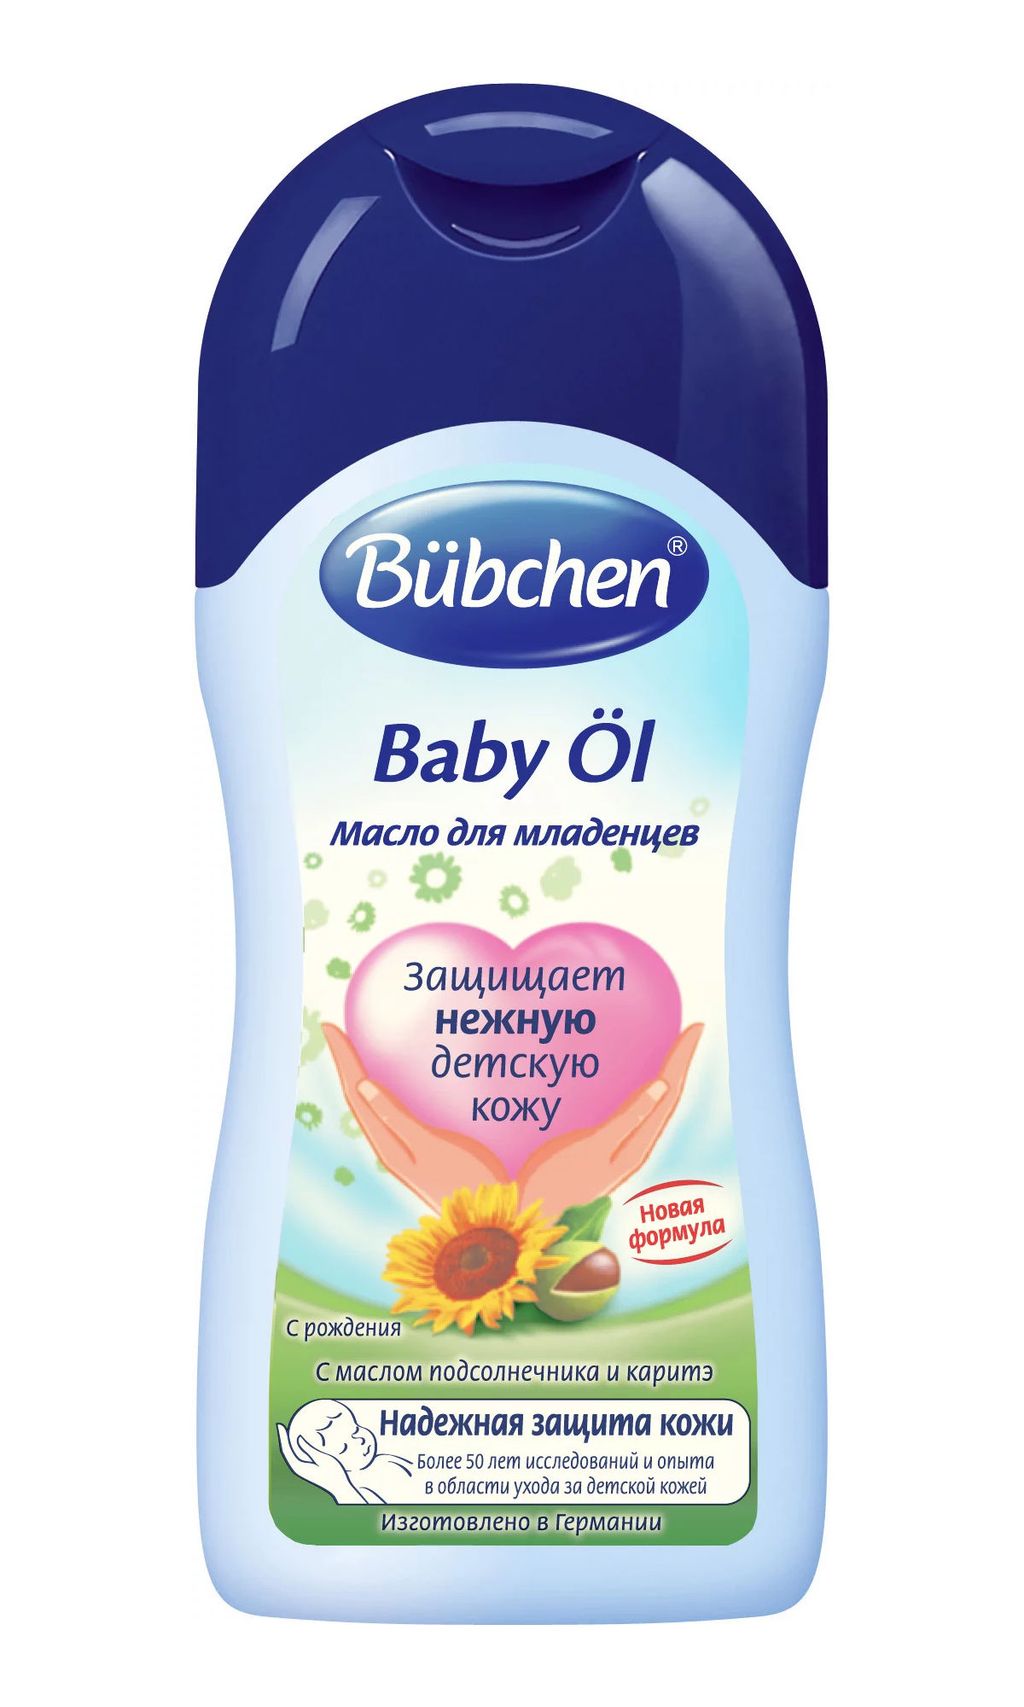 Bubchen Масло для младенцев, масло для детей, 400 мл, 1 шт.